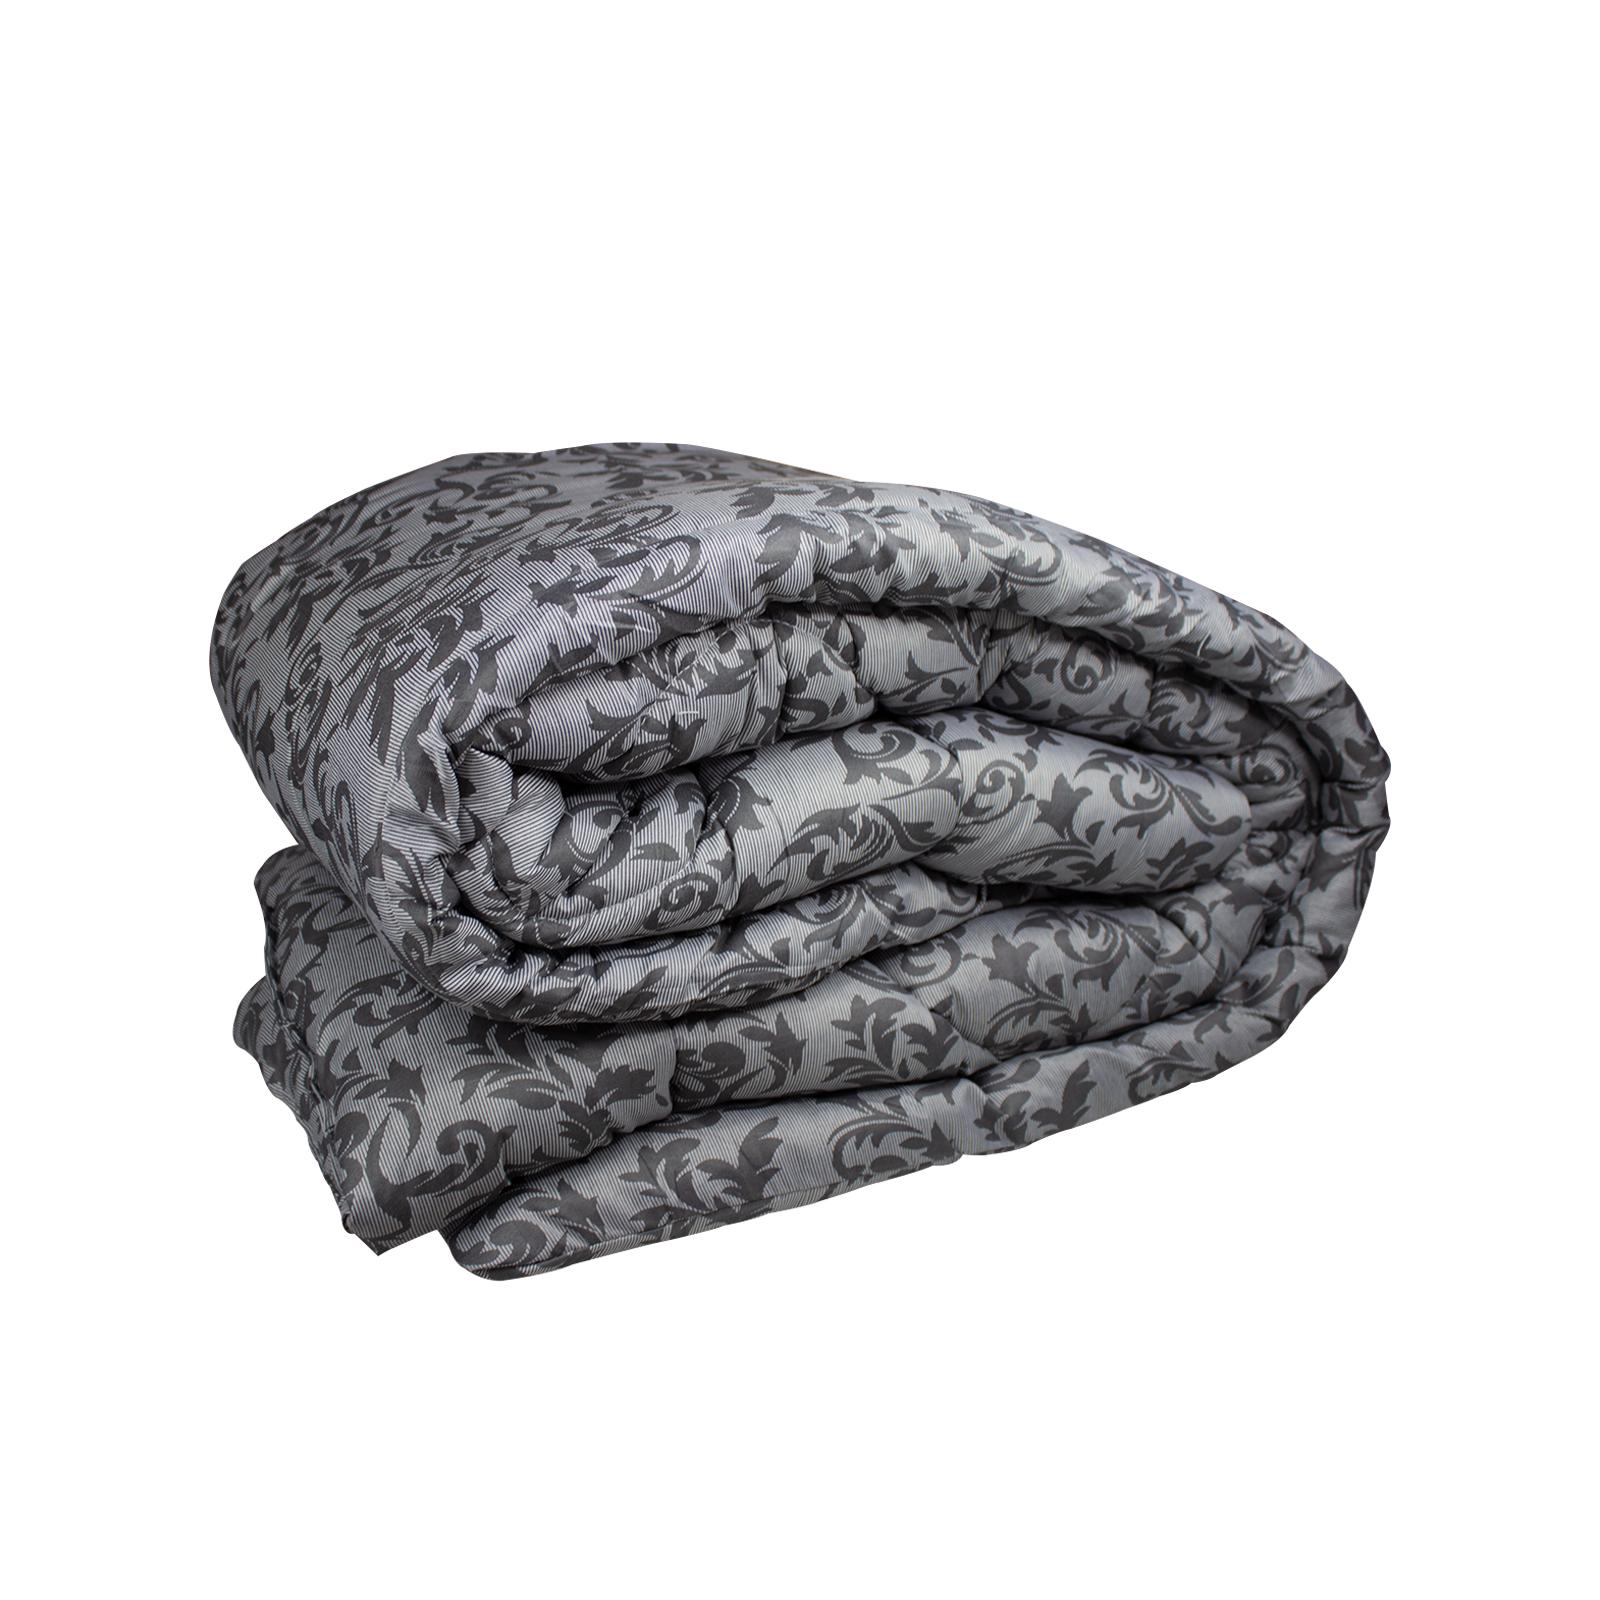 Одеяло Constancy зимнее серые вензеля поликоттон 1,45x2,05 м (001315)